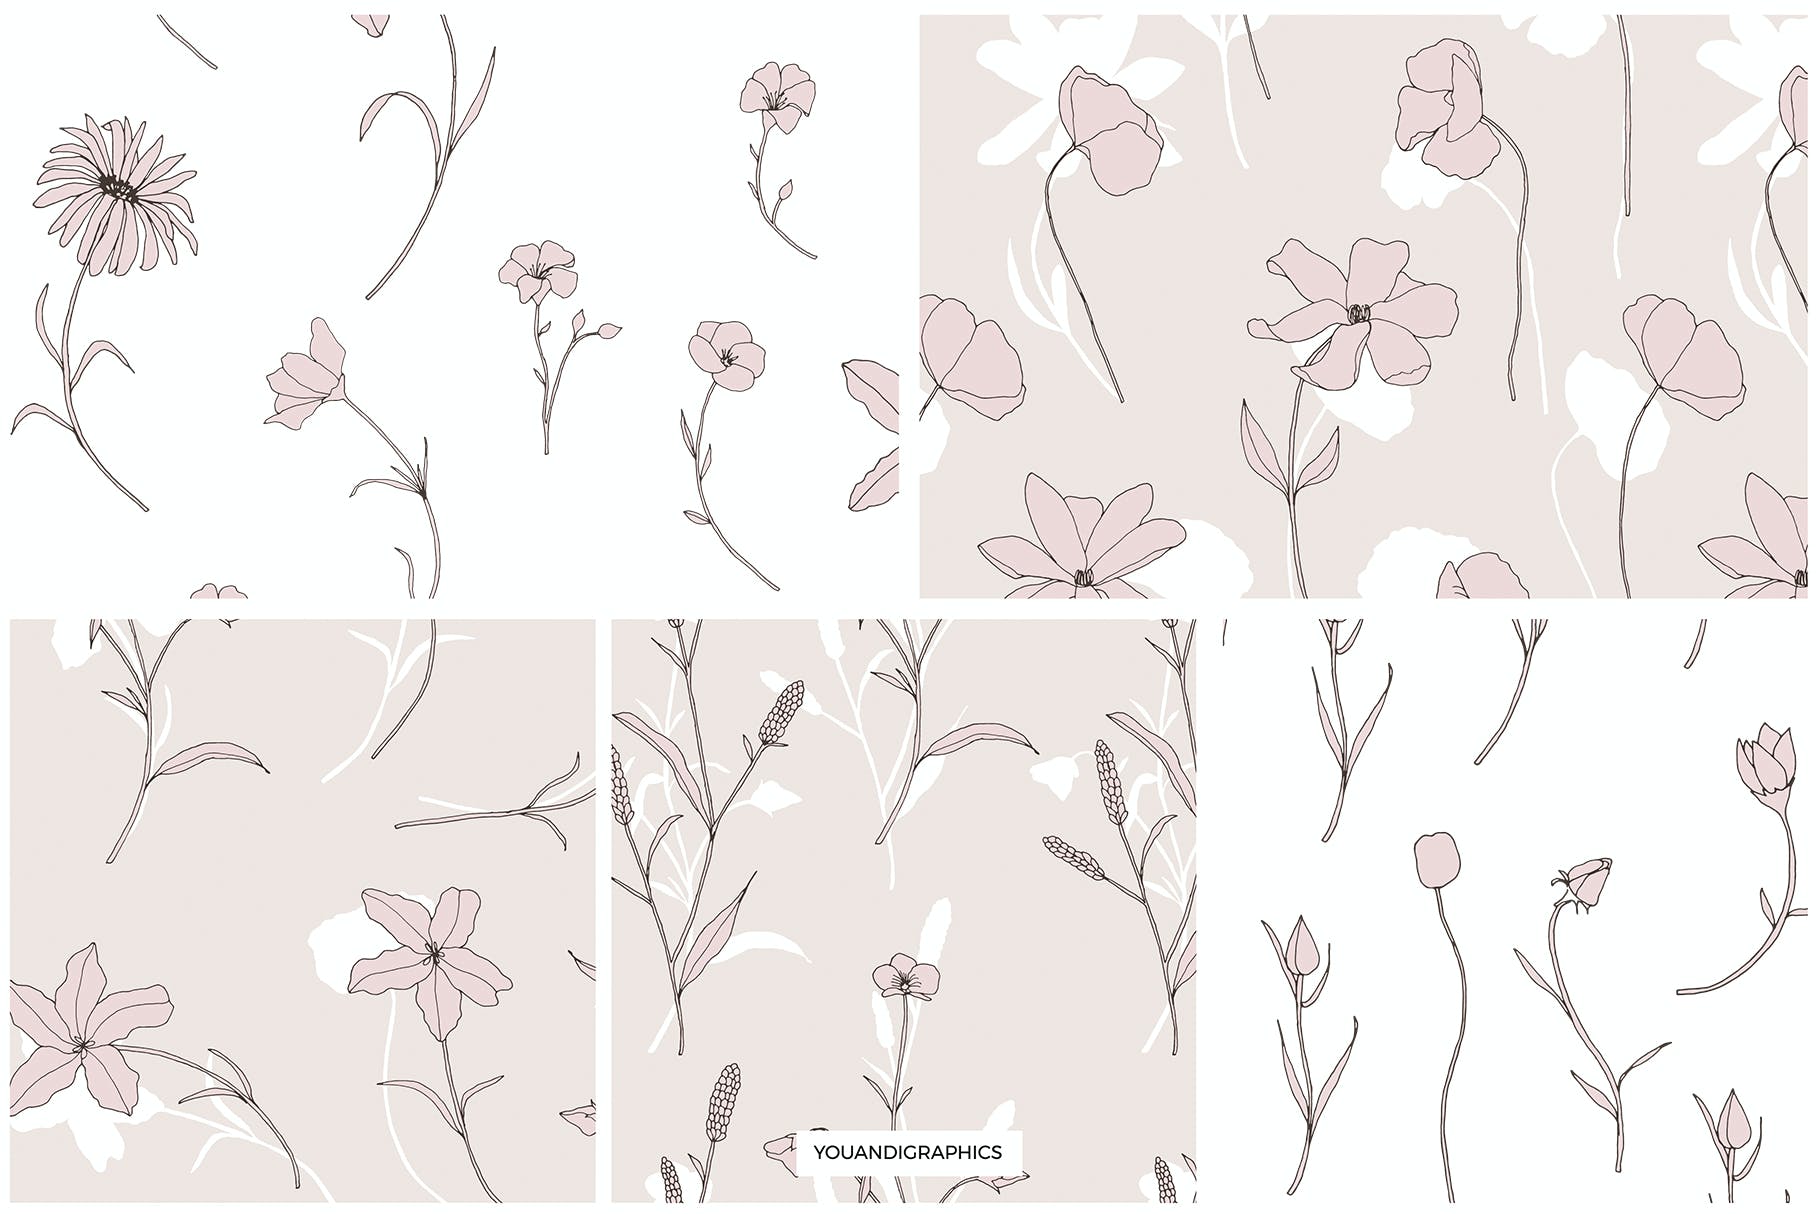 精美的花卉图案和元素 Dainty Floral Patterns & Elements 图片素材 第13张